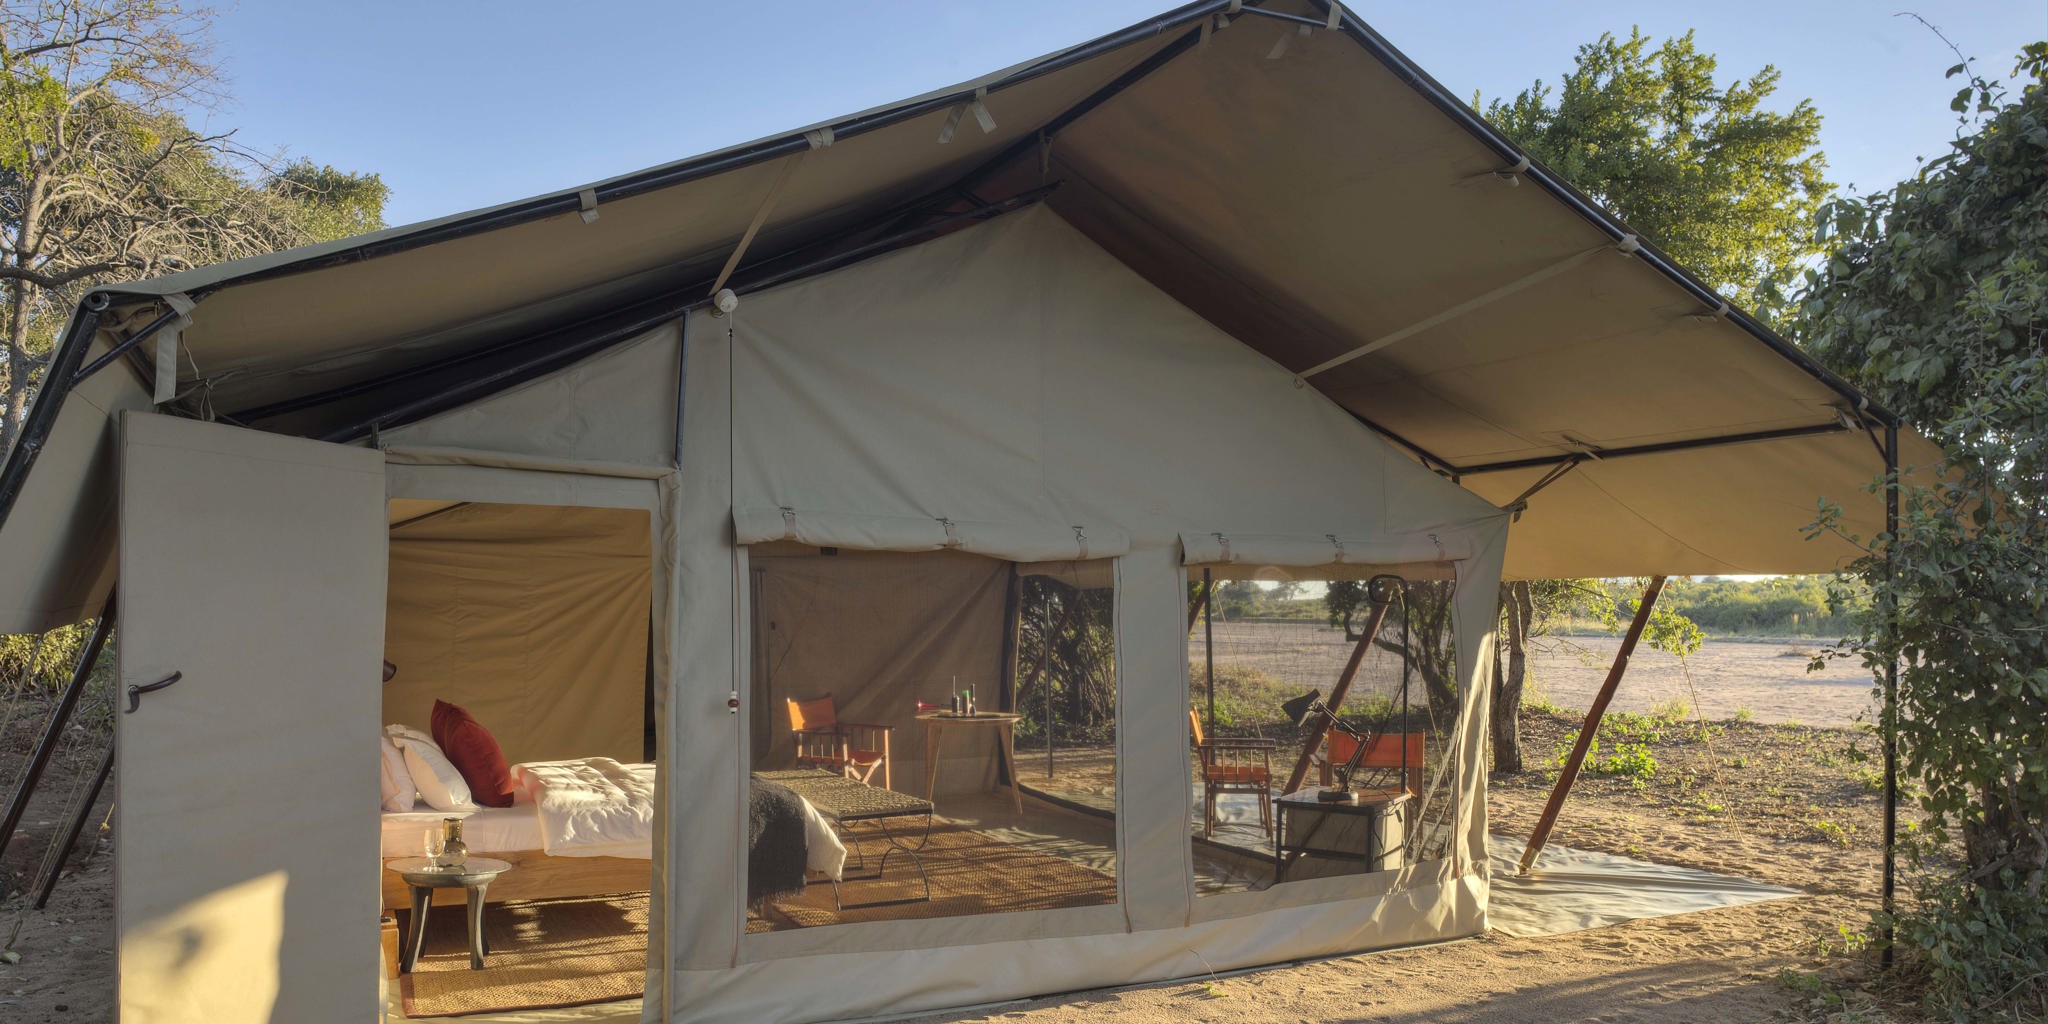 Kwihala exterior veiw of tent